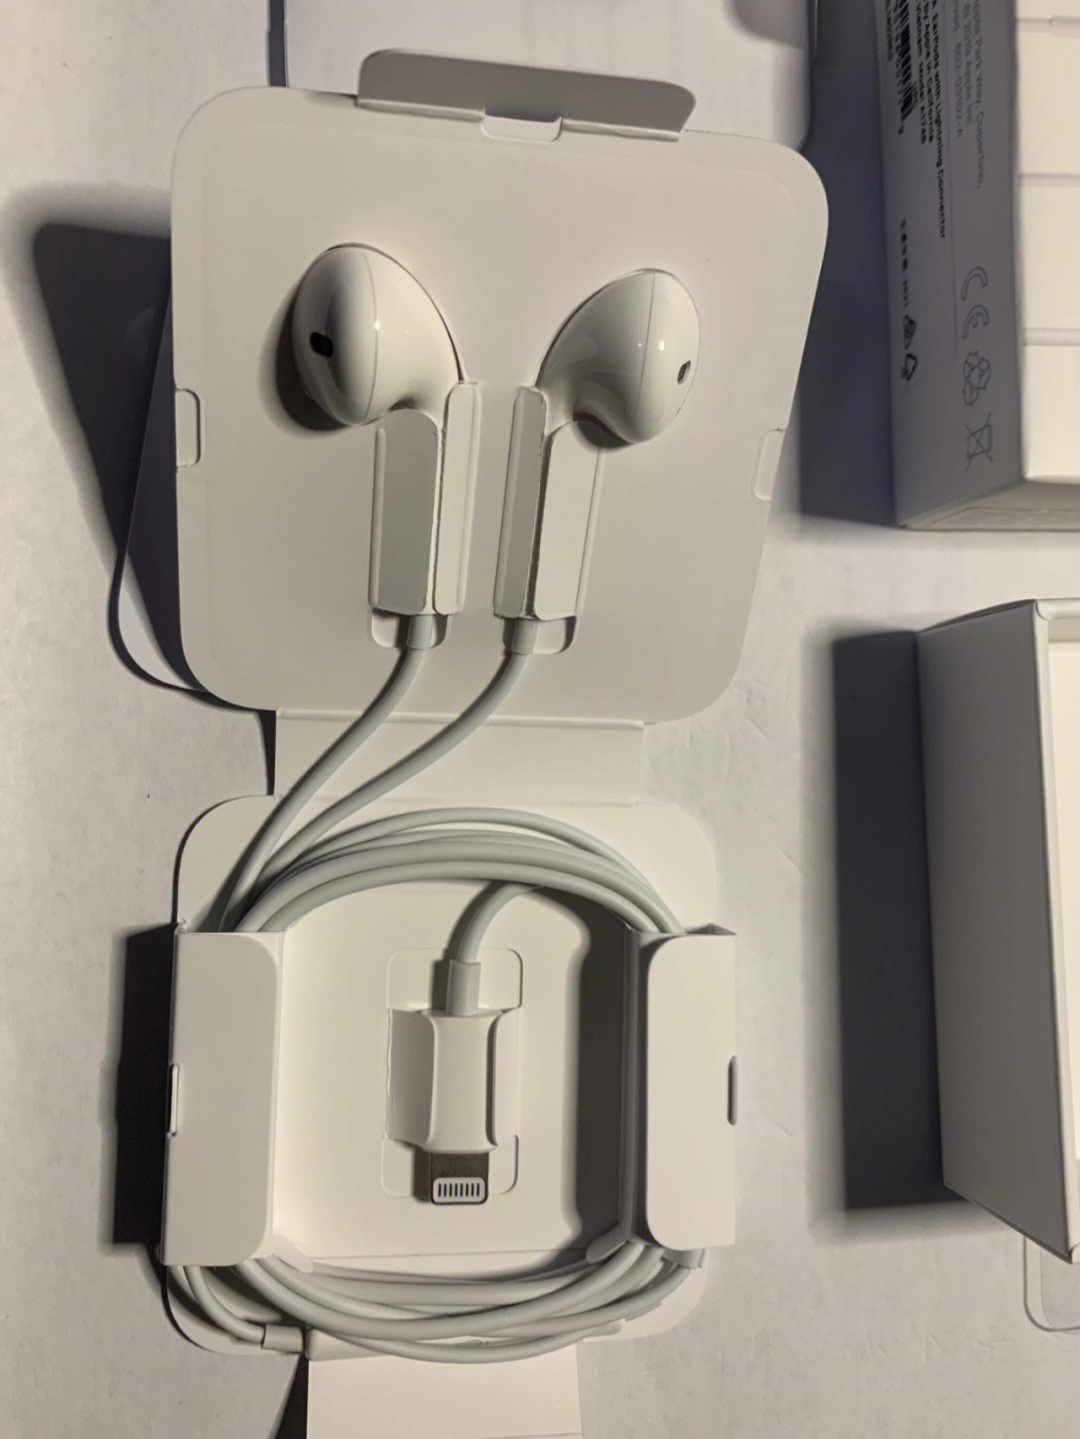 苹果4代耳机包装图片